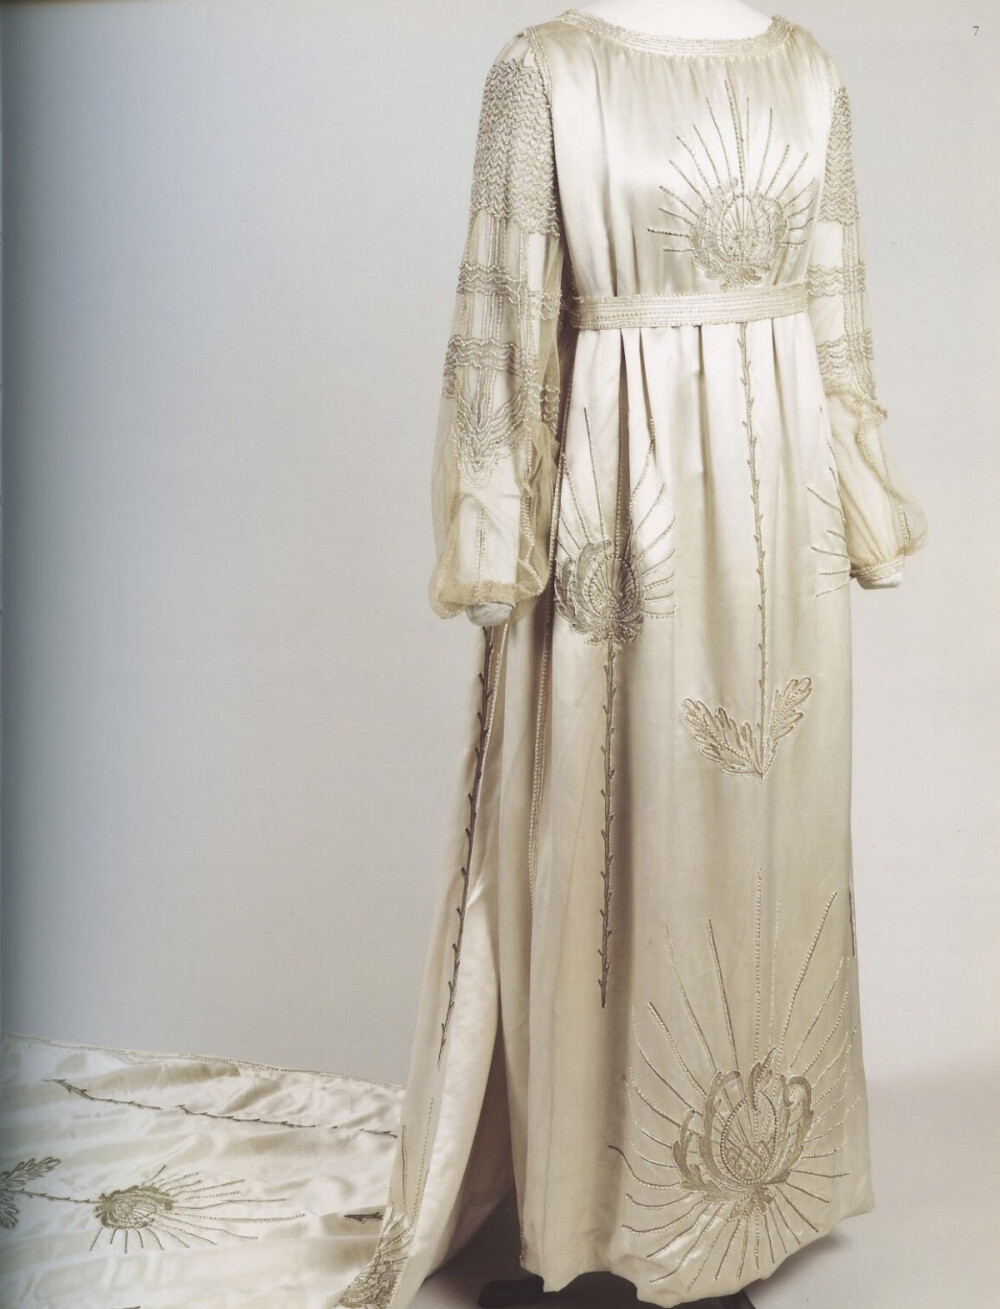 让娜·朗雯为自己女儿出嫁设计的结婚礼服 